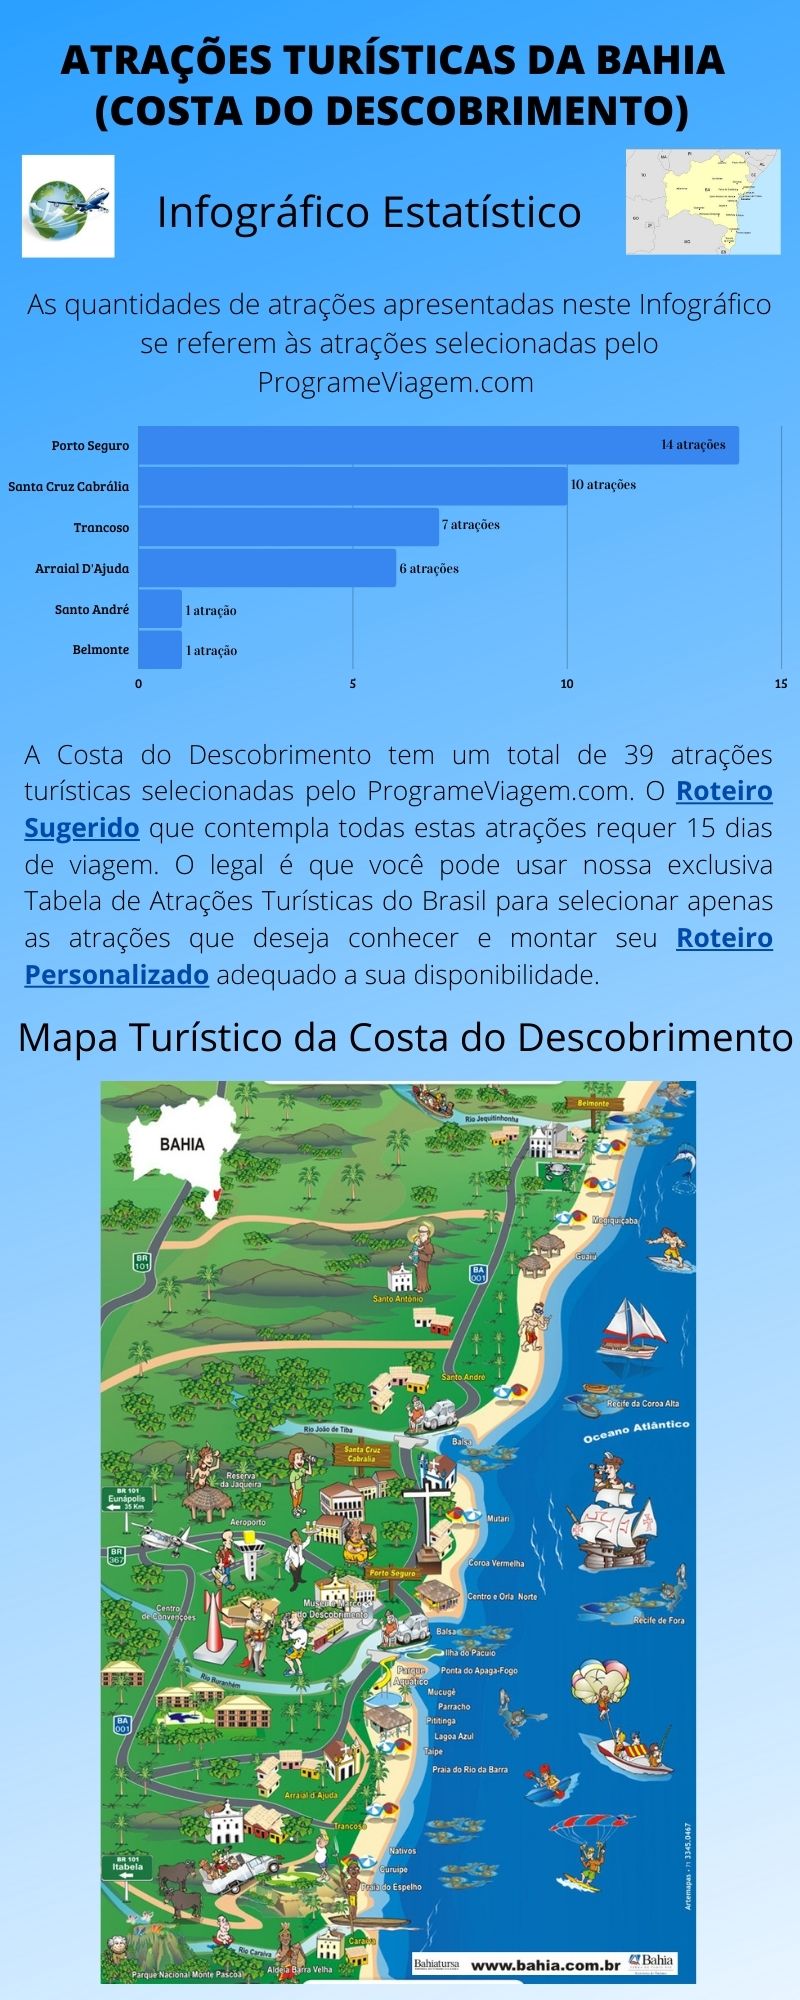 Infográfico Atrações Turísticas da Bahia (Costa do Descobrimento)